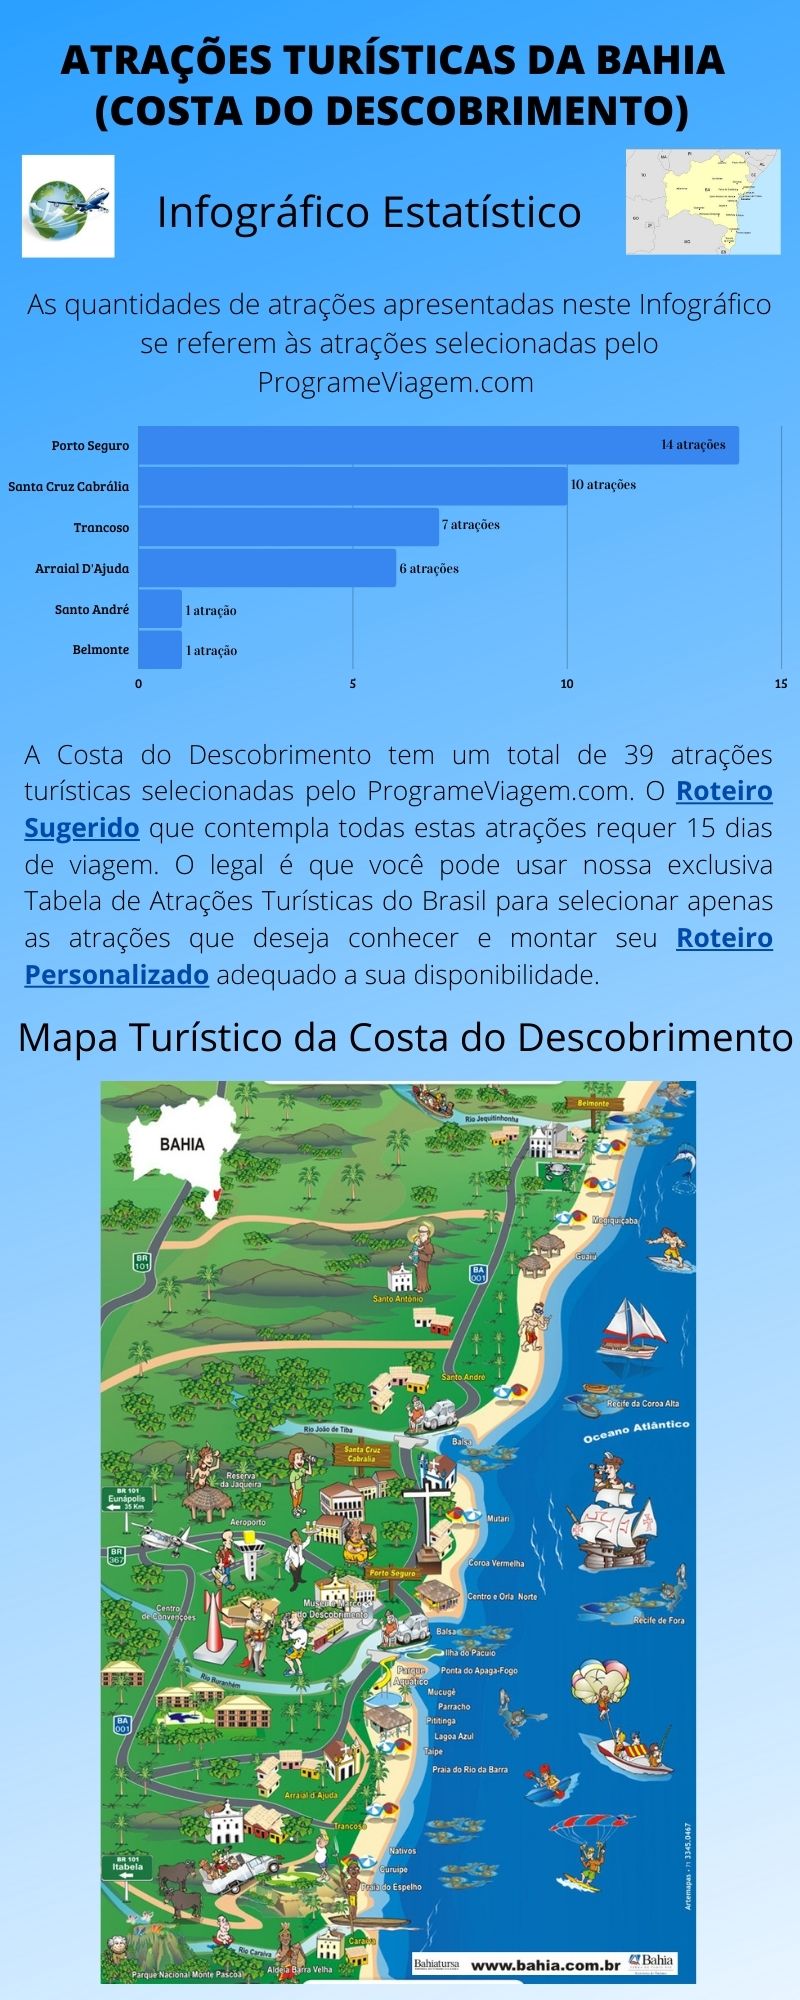 Infográfico Atrações Turísticas da Bahia (Costa do Descobrimento)